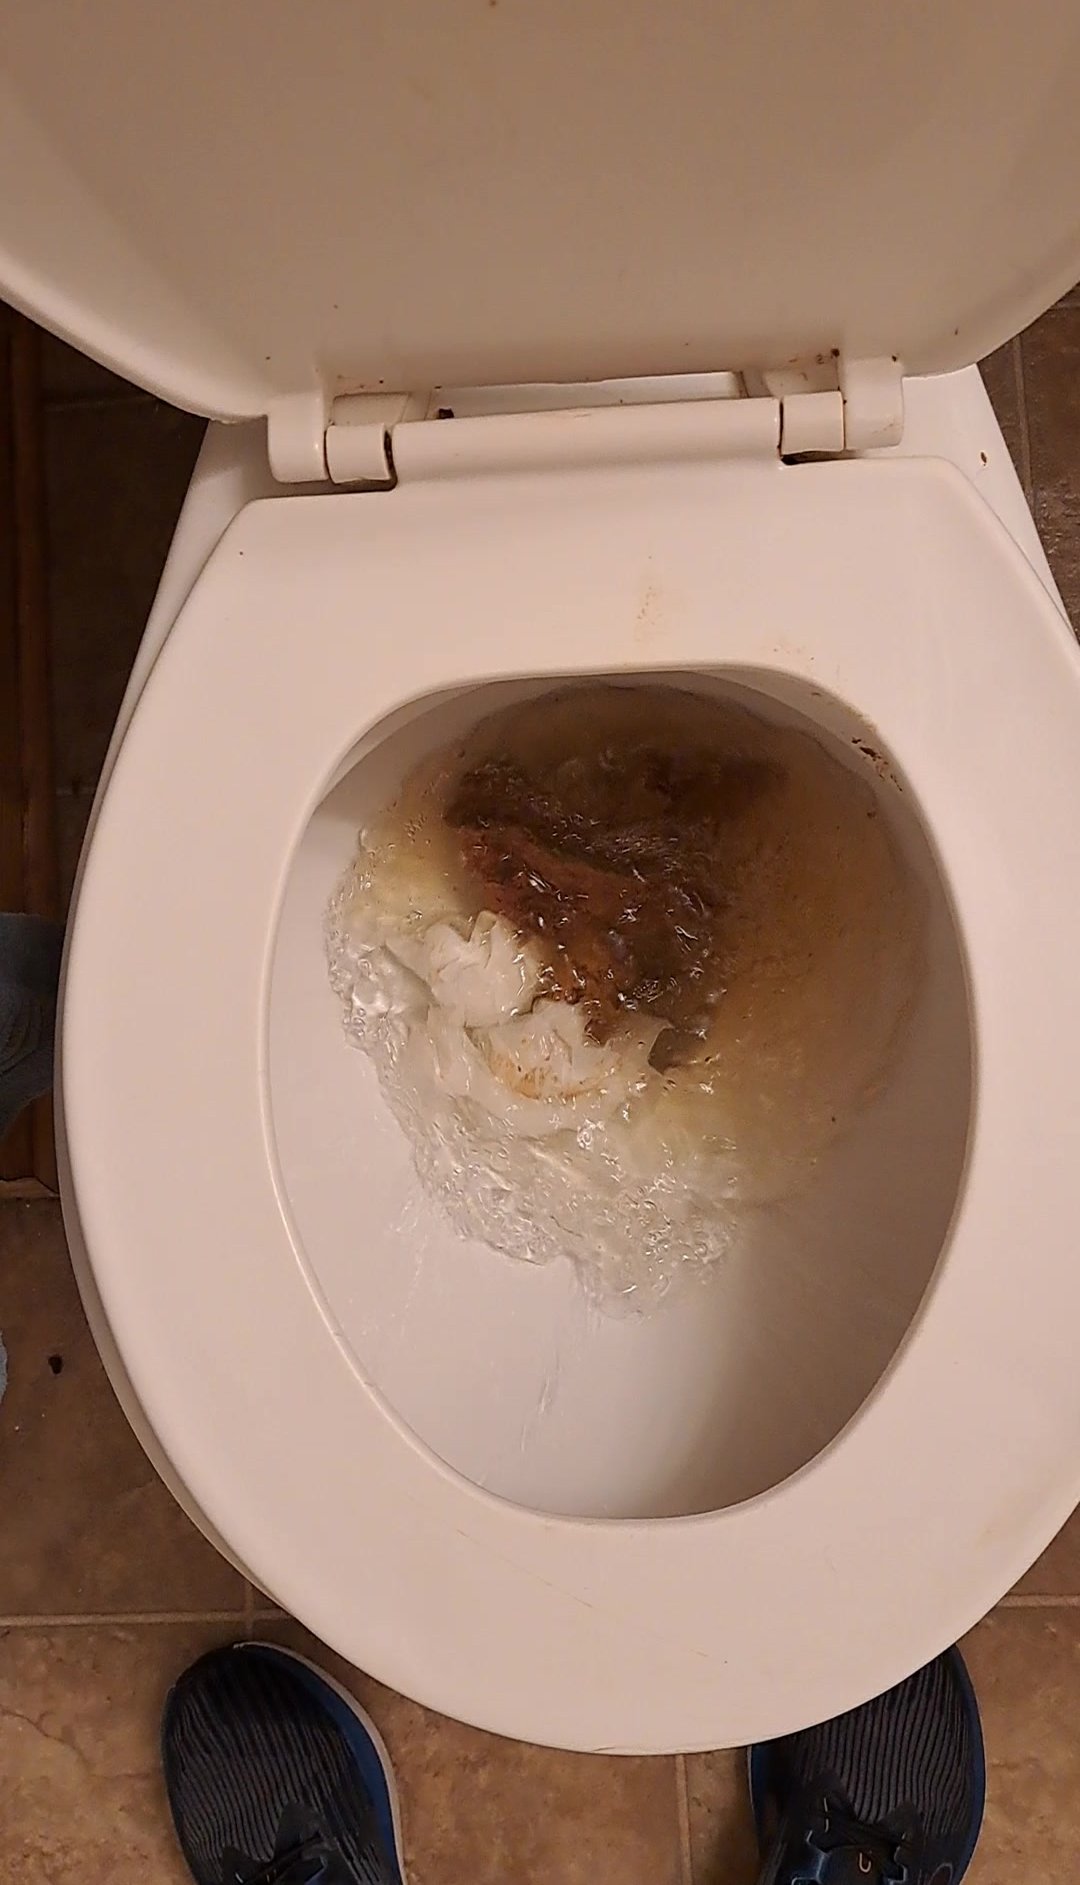 Big poop flush at grandpa's